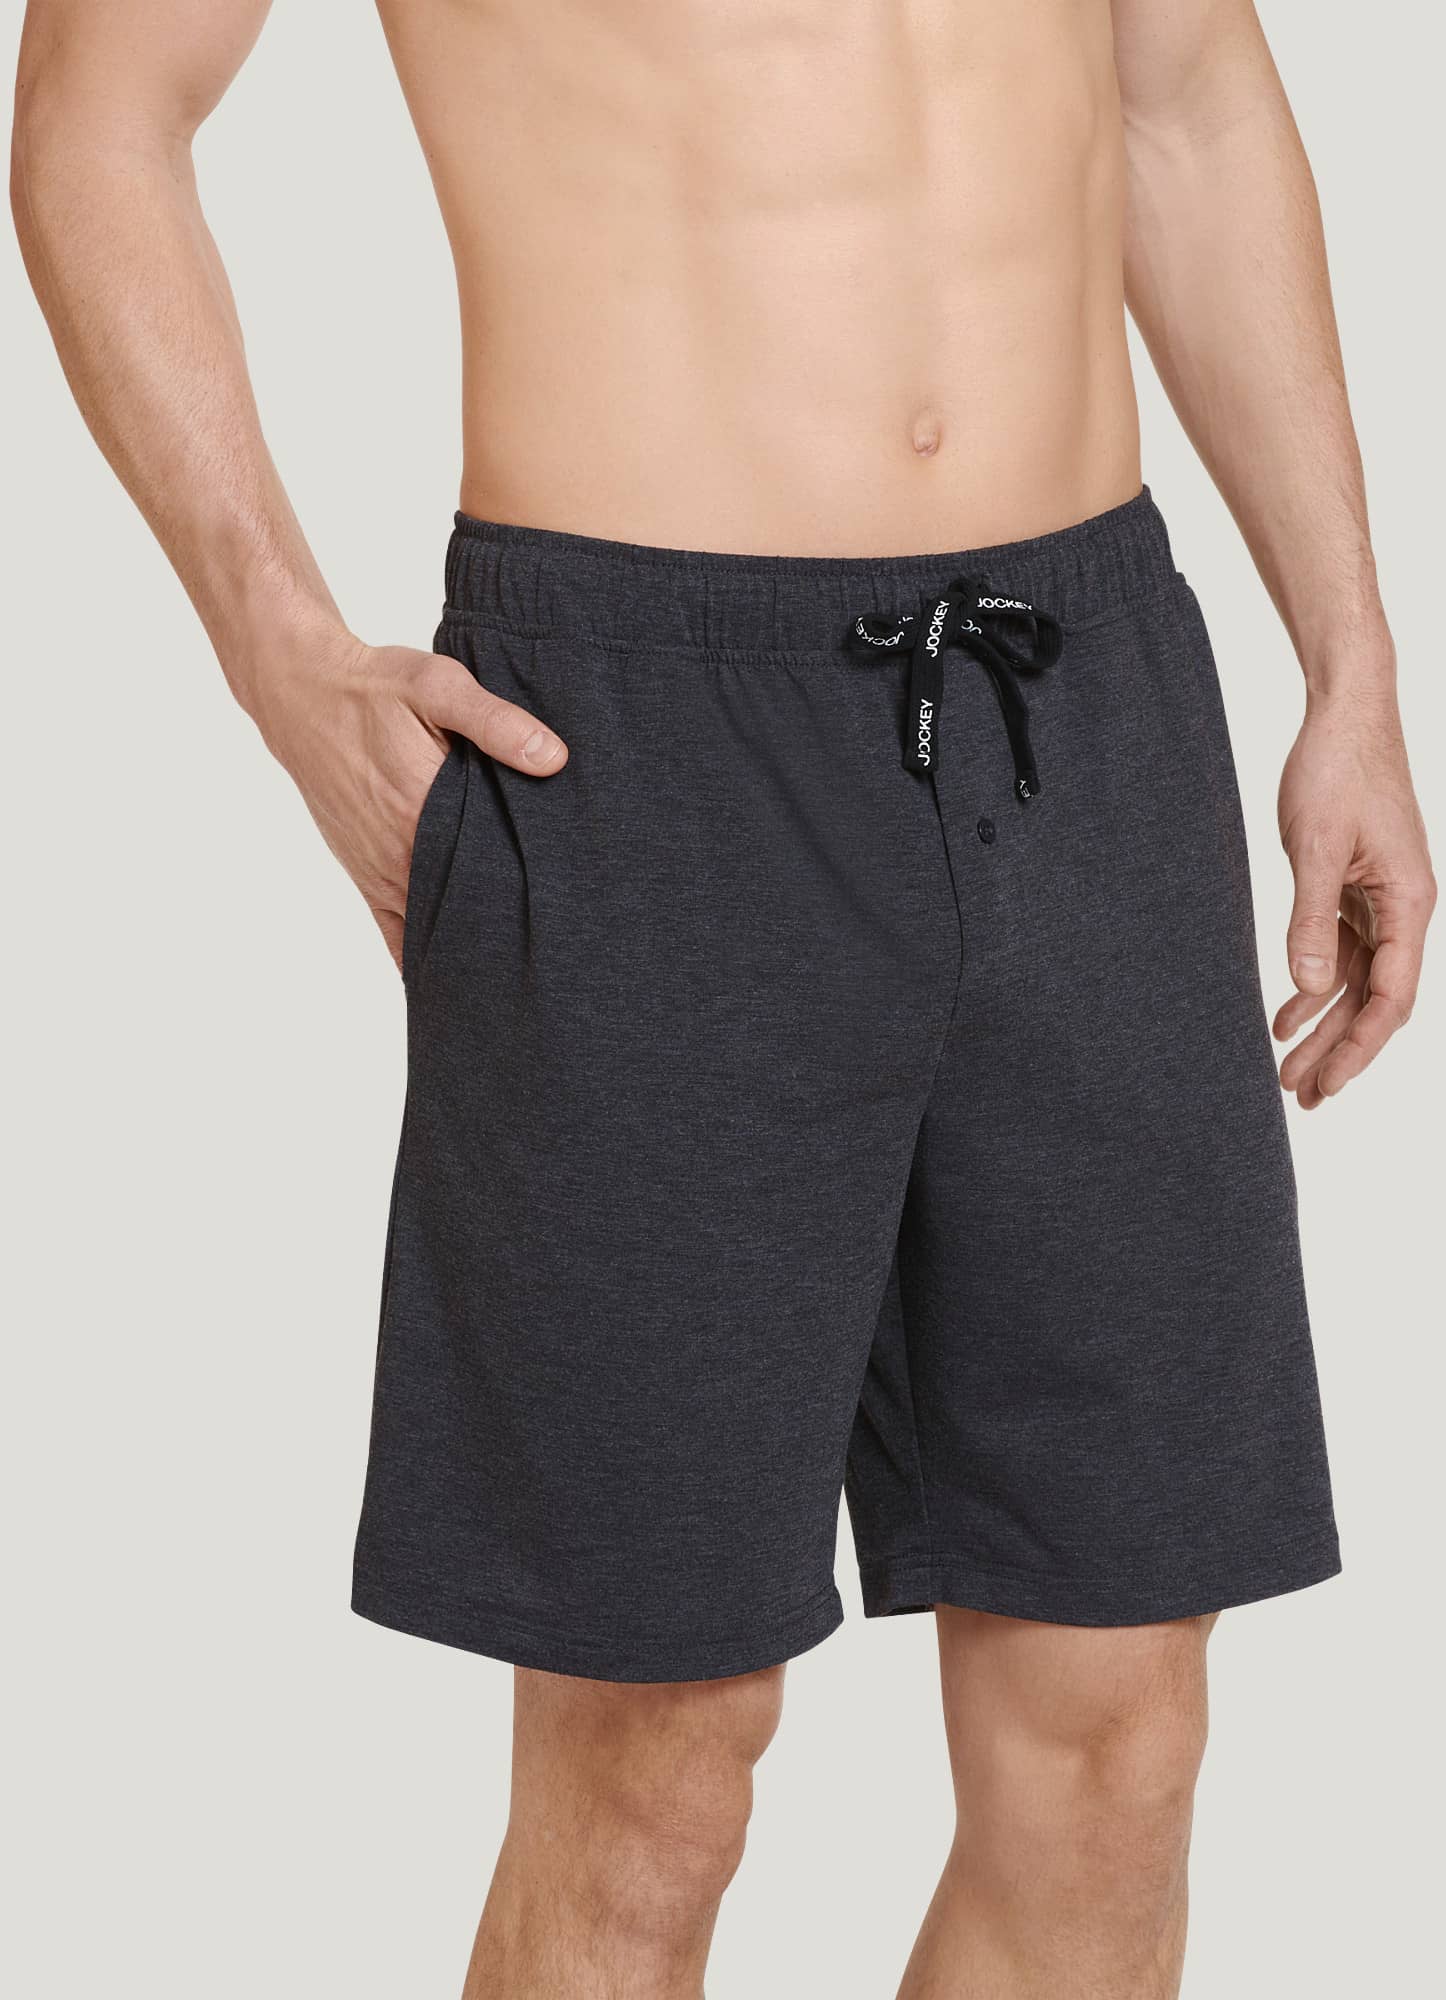 Men See Through Drawstring Lightweight Boxer Shorts Lounge Short Pants  Underwear